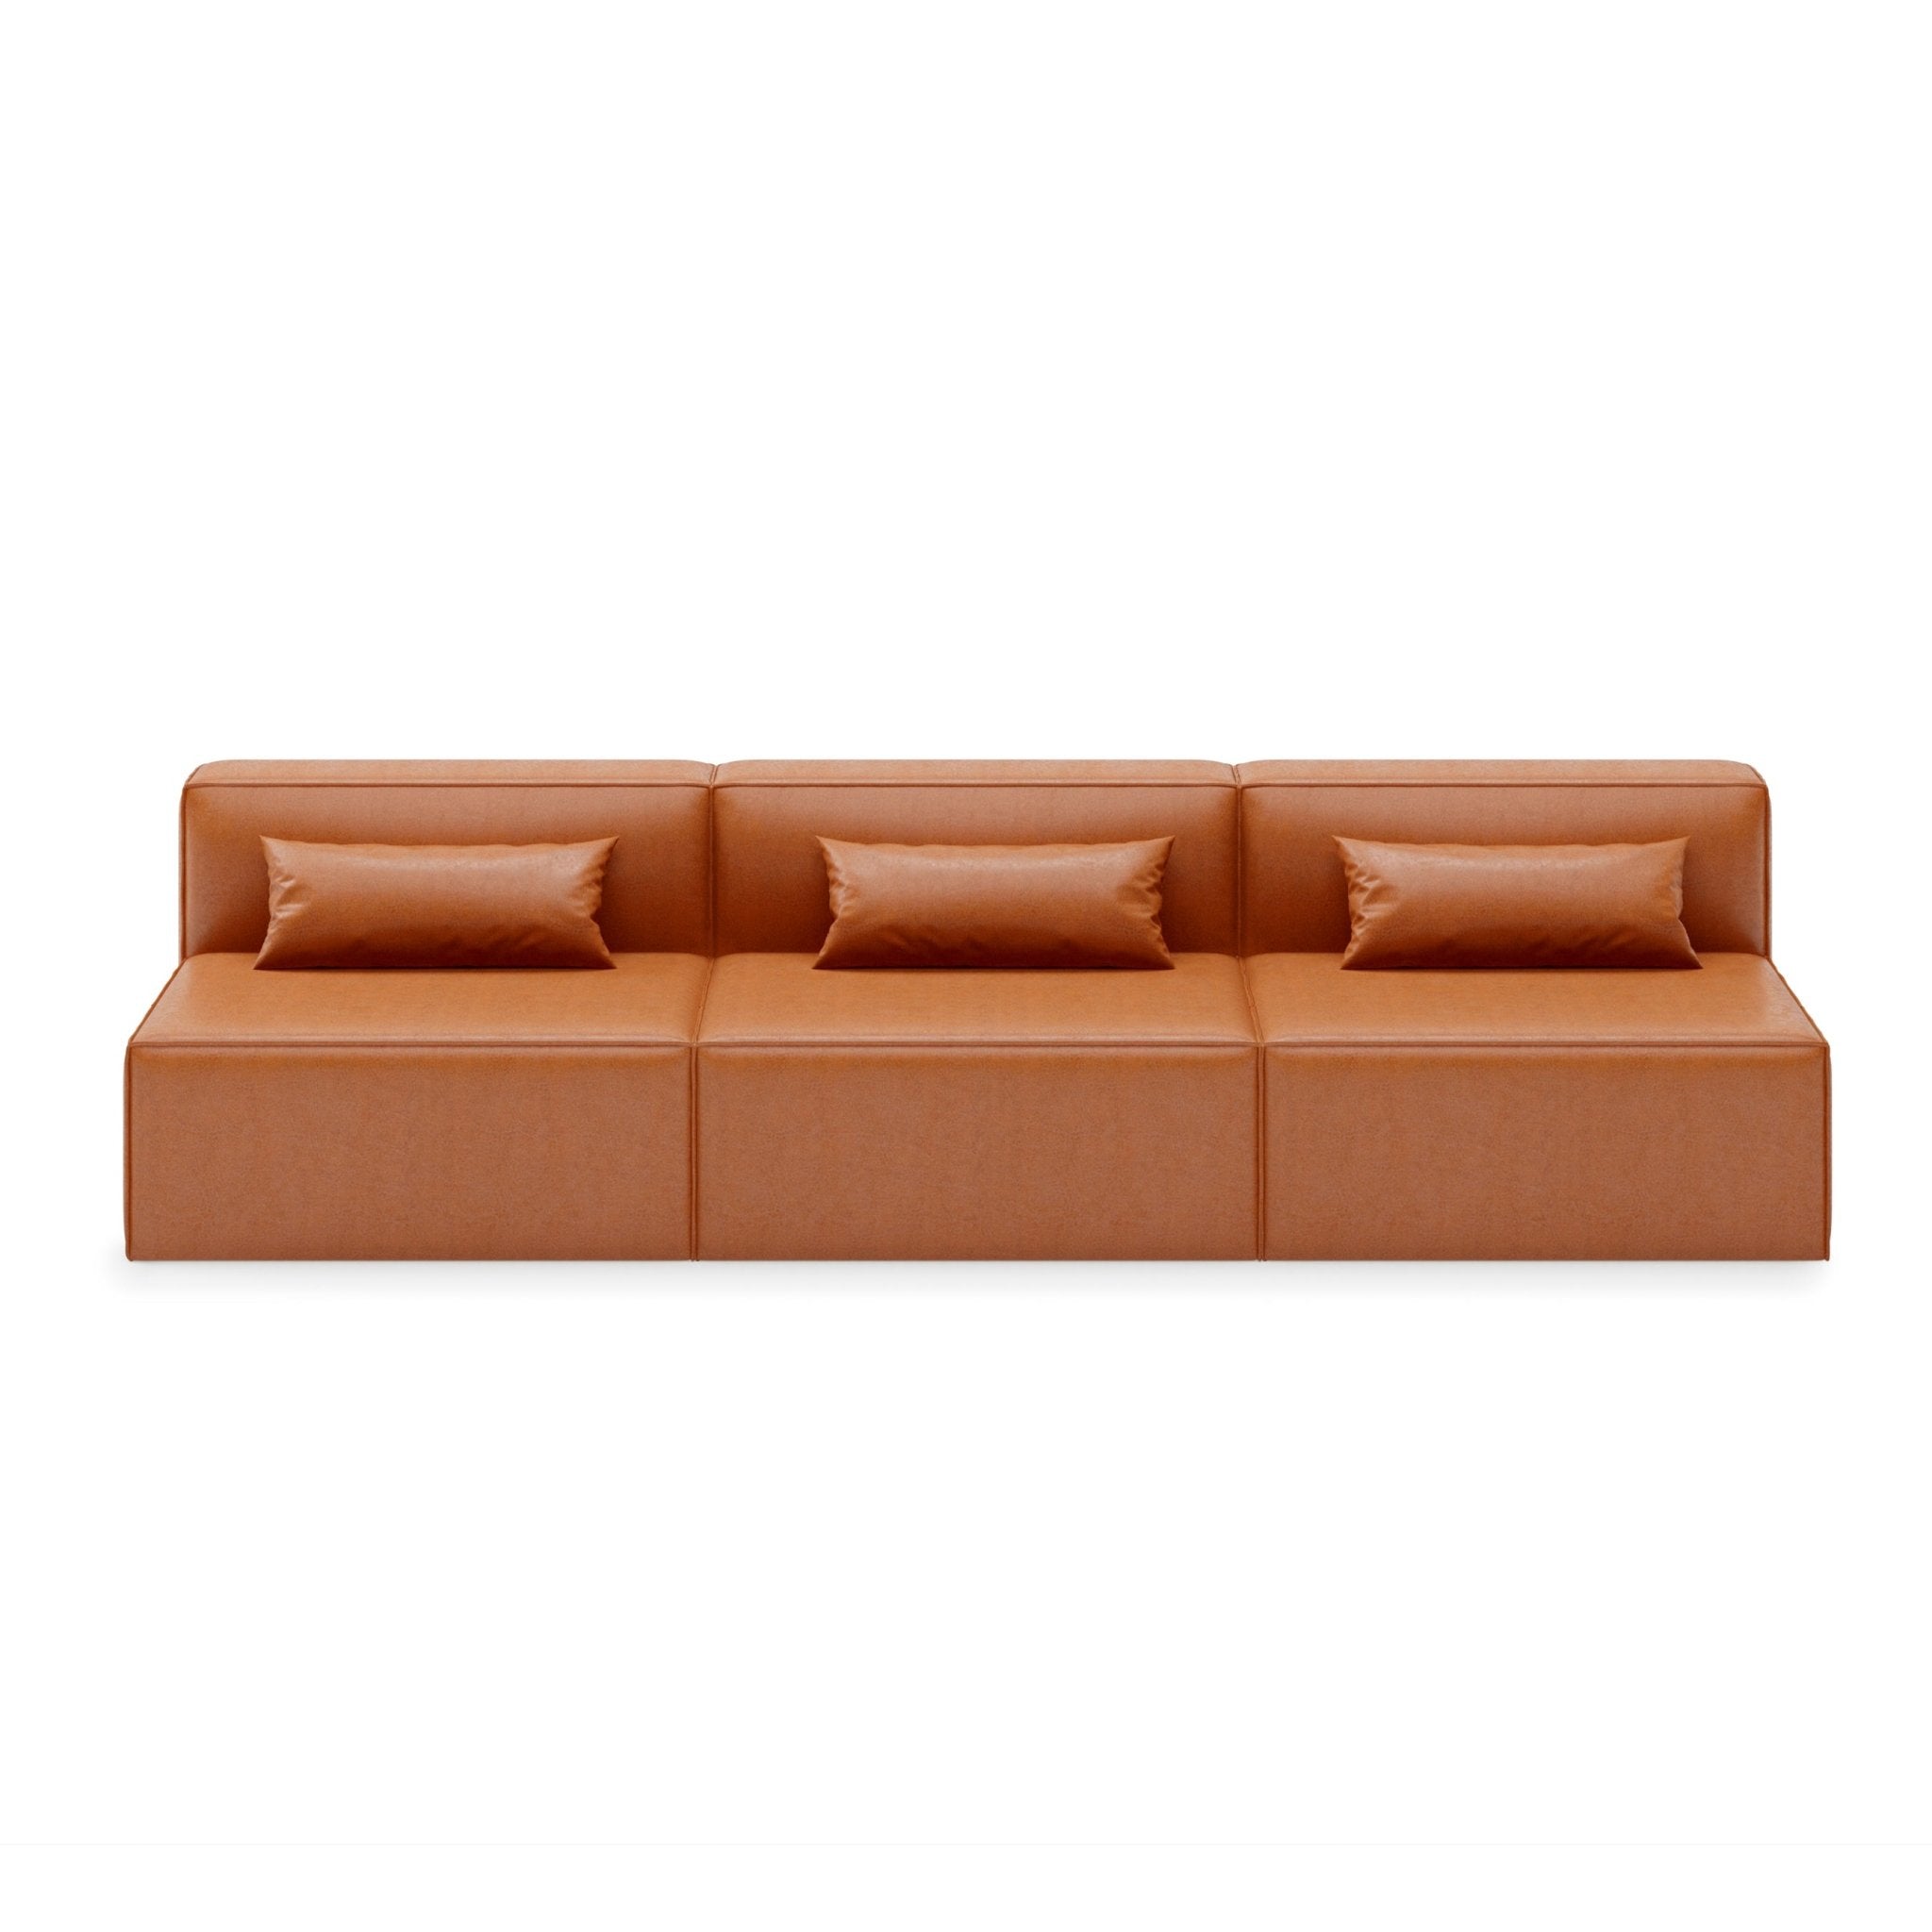 Mix Armless Sofa: 3-Seater - Vegan AppleSkin Leather Cognac